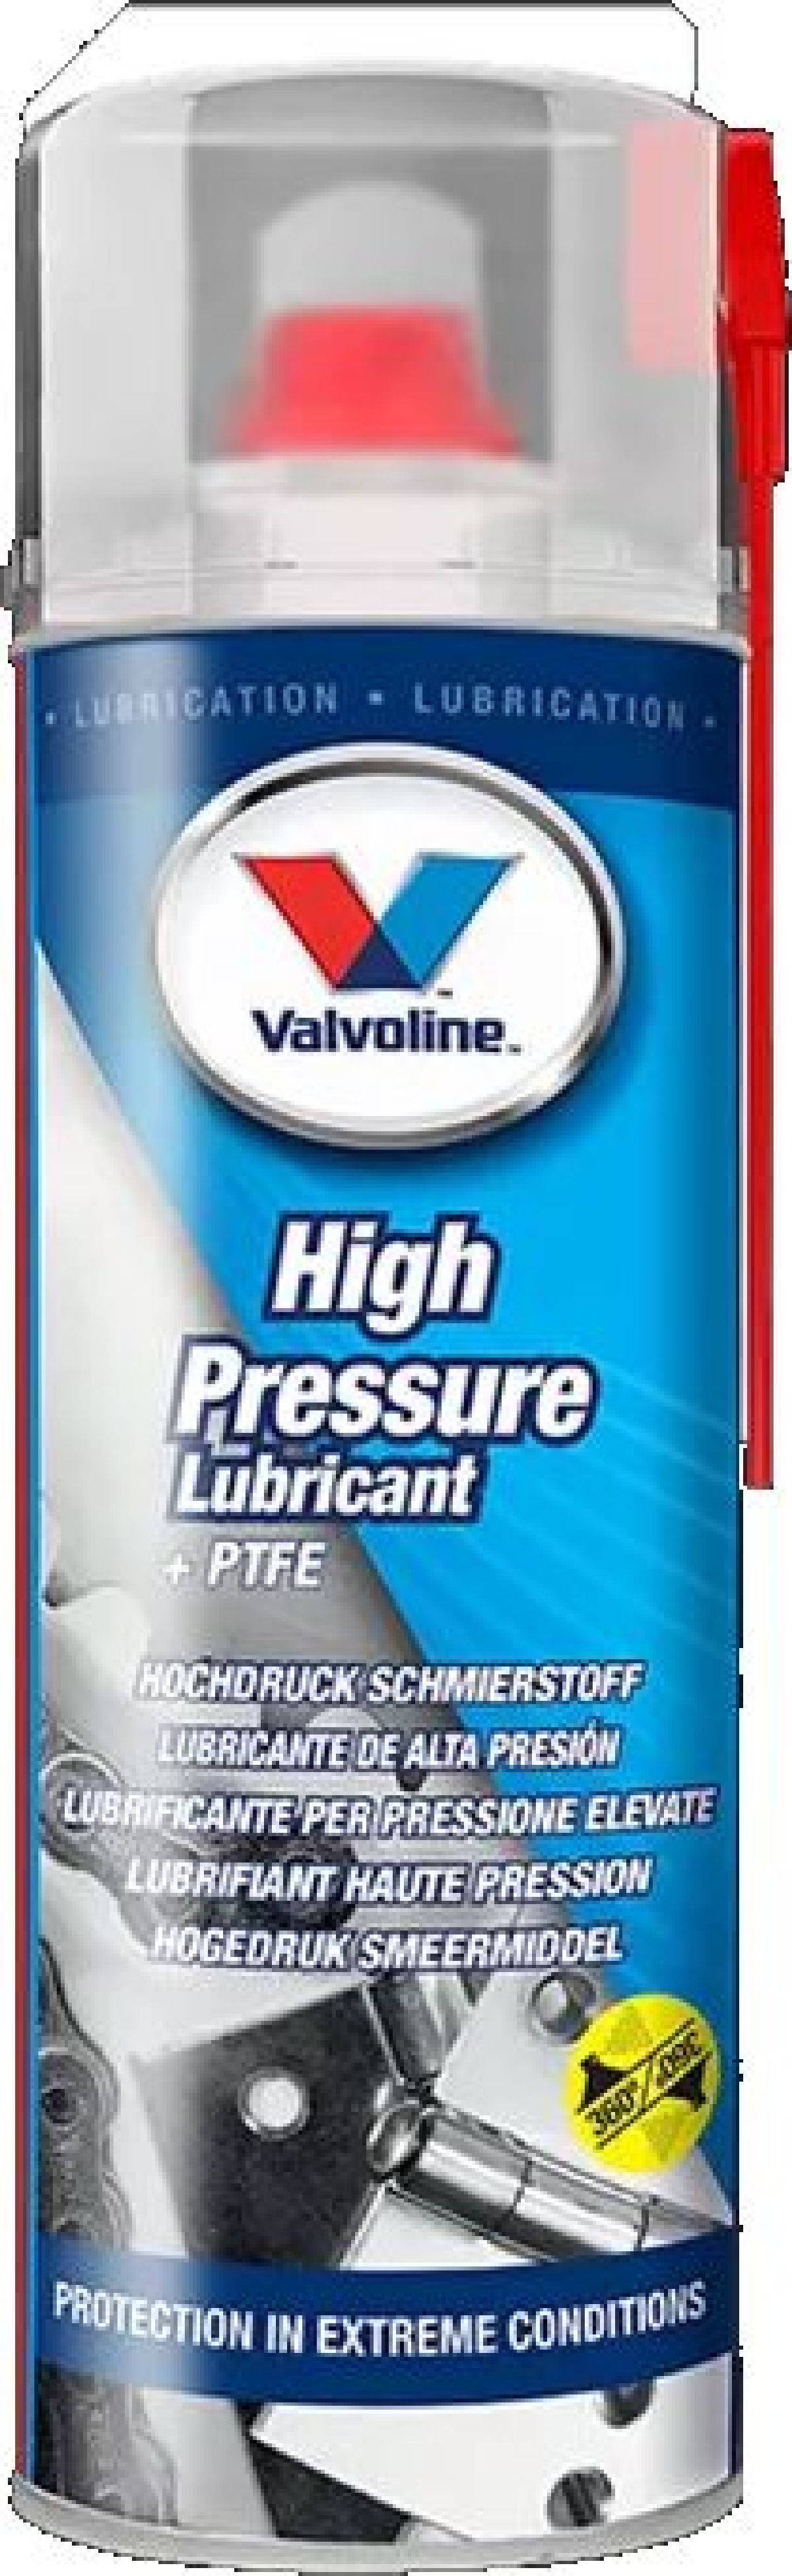 Valvoline High Pressure Lube PTFE